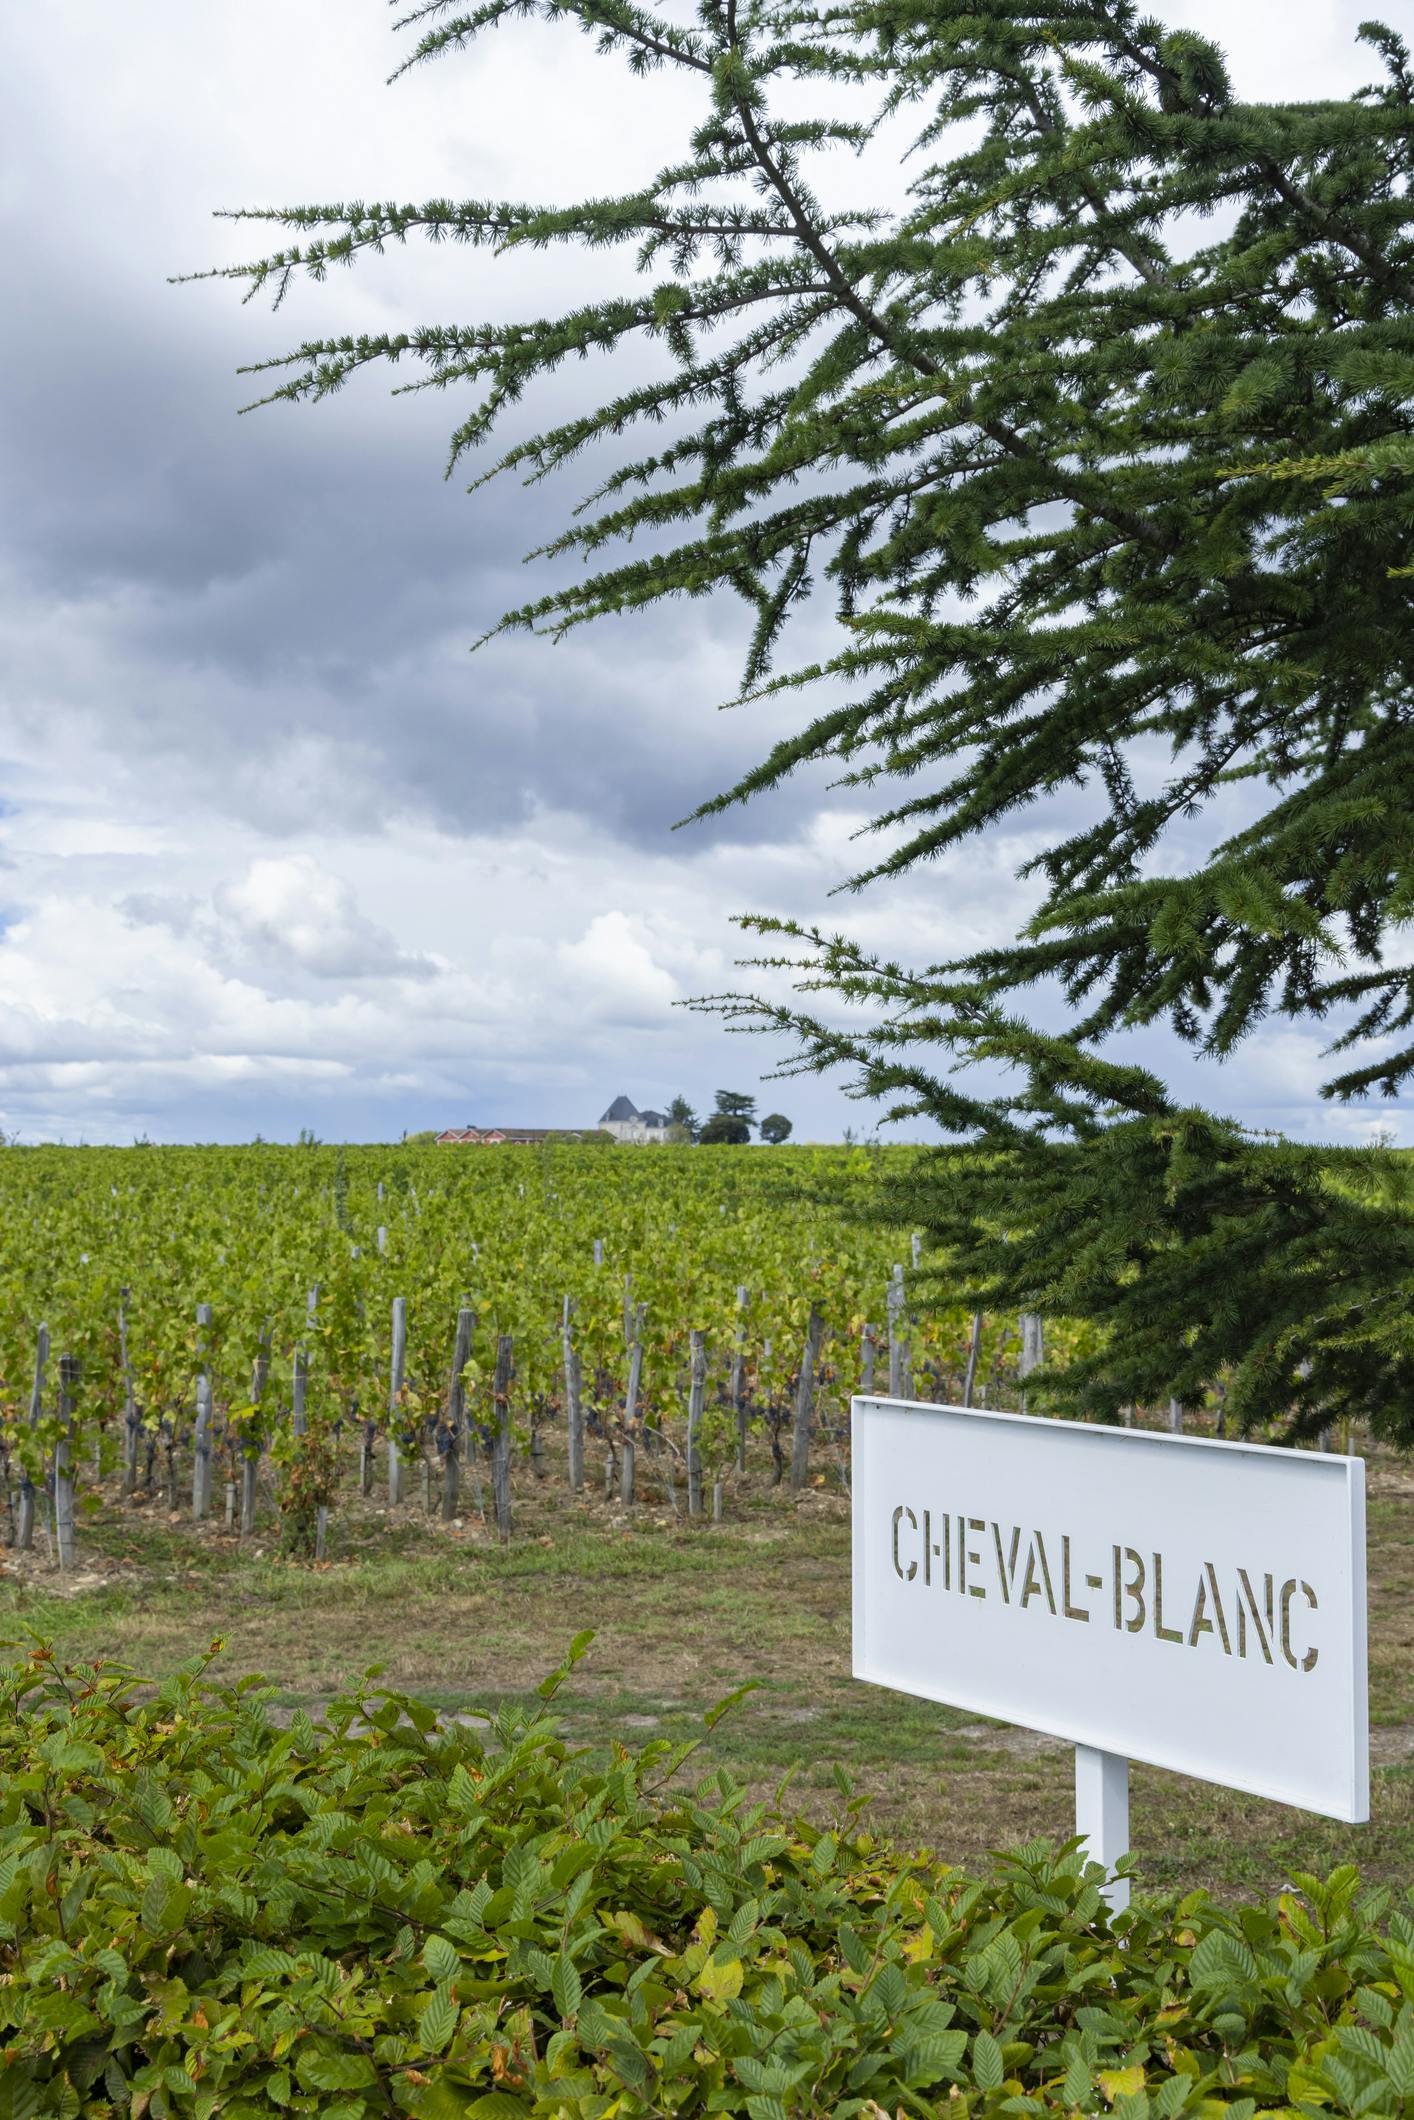 Namensschild eines Weinguts in Frankreich & Weinanbaugebiet im Hintergrund